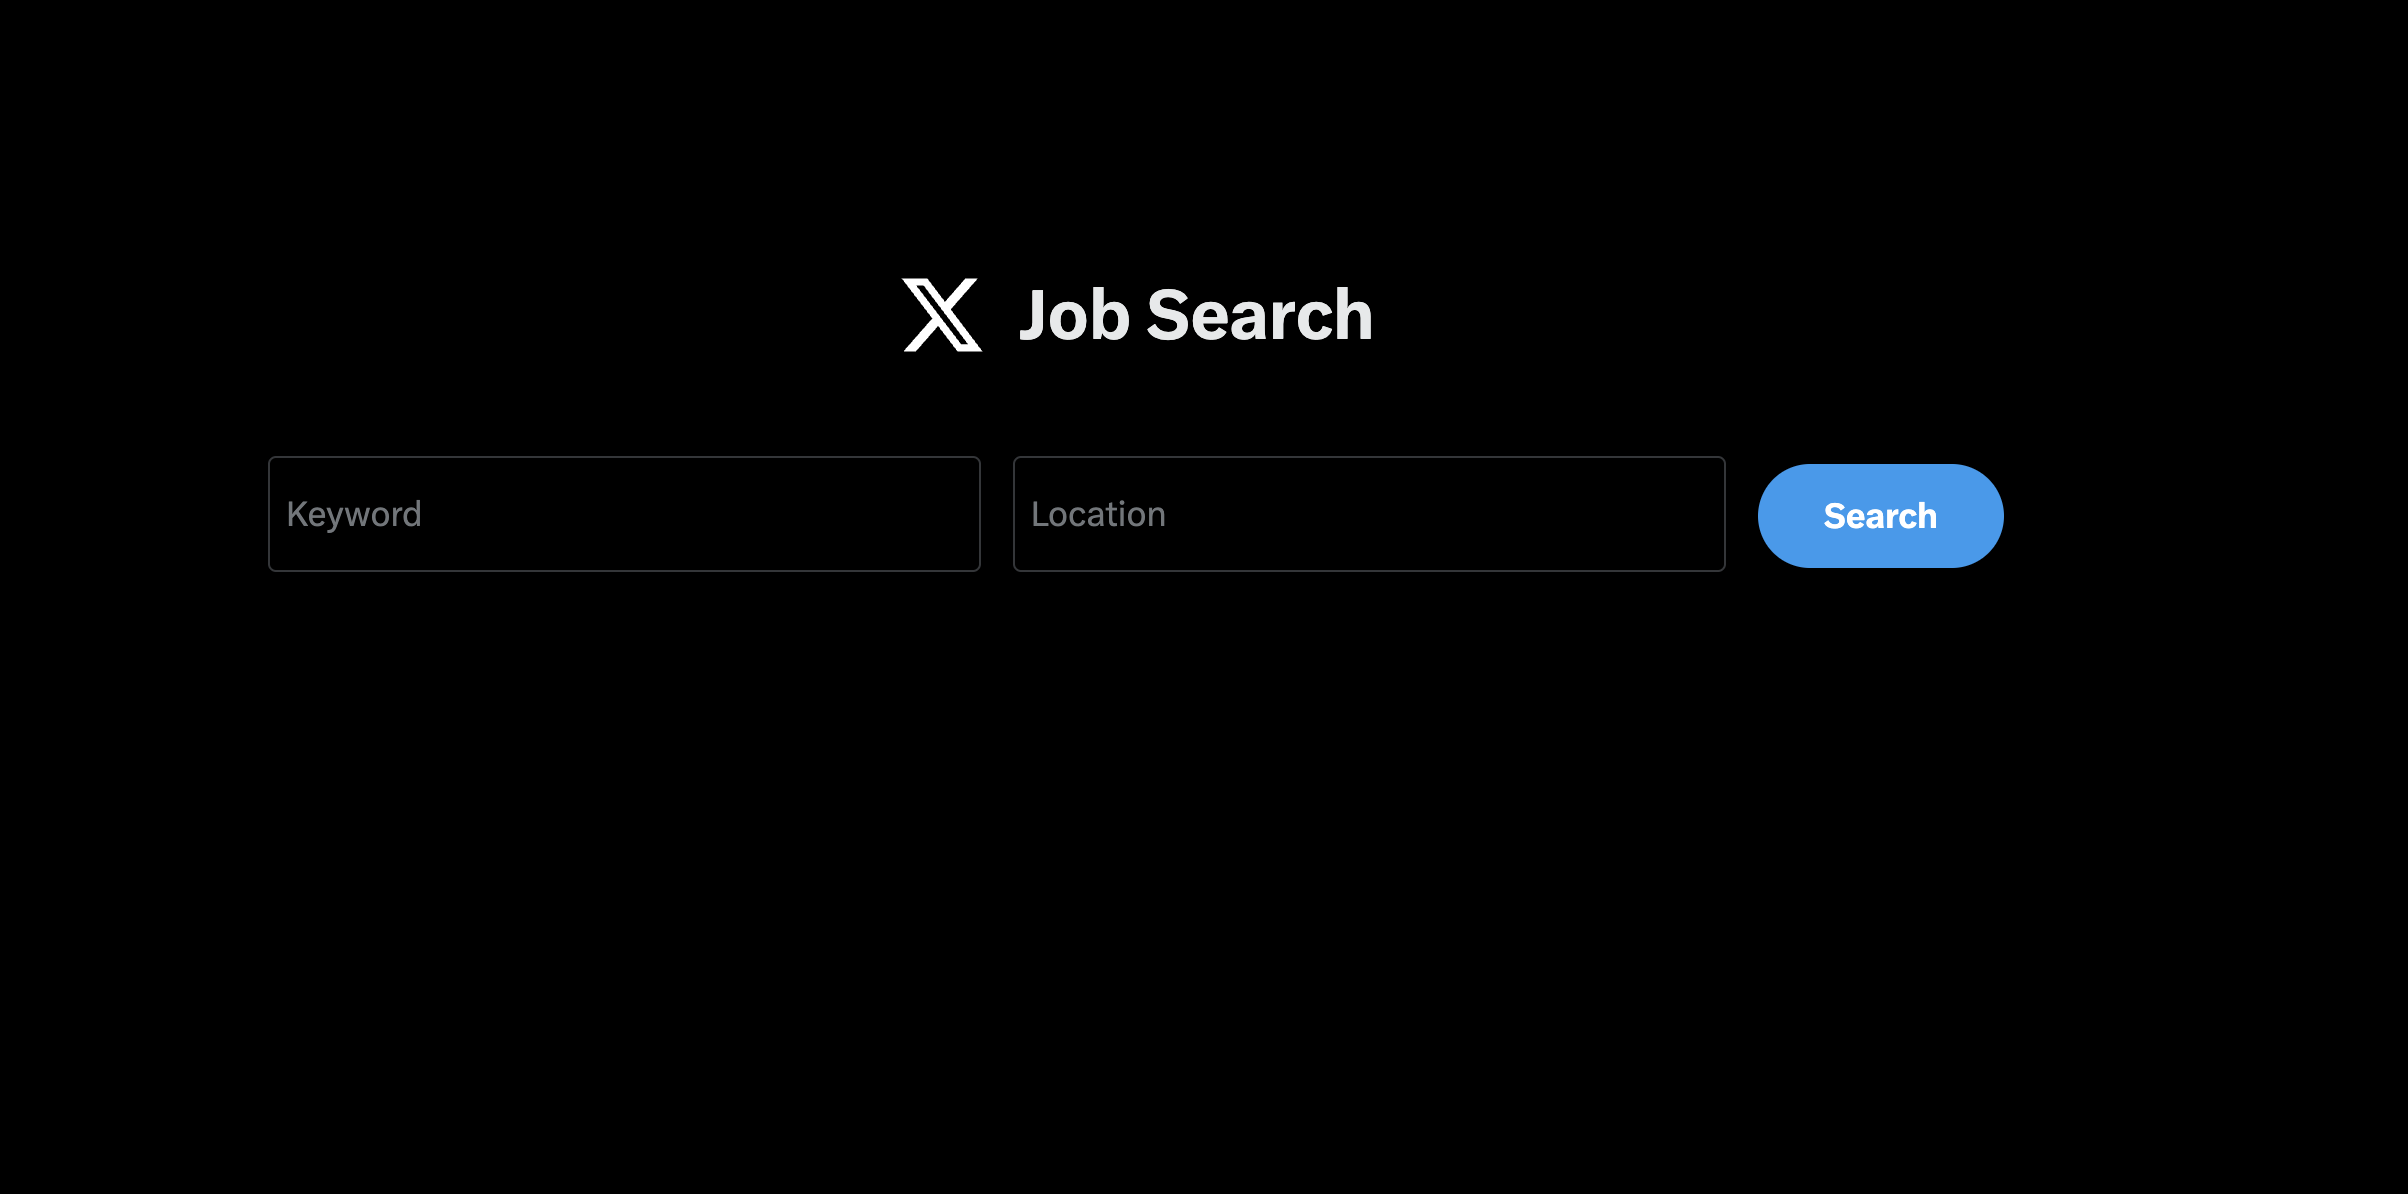 أداة البحث عن الوظائف الخاصة بـ X متاحة الآن على الويب